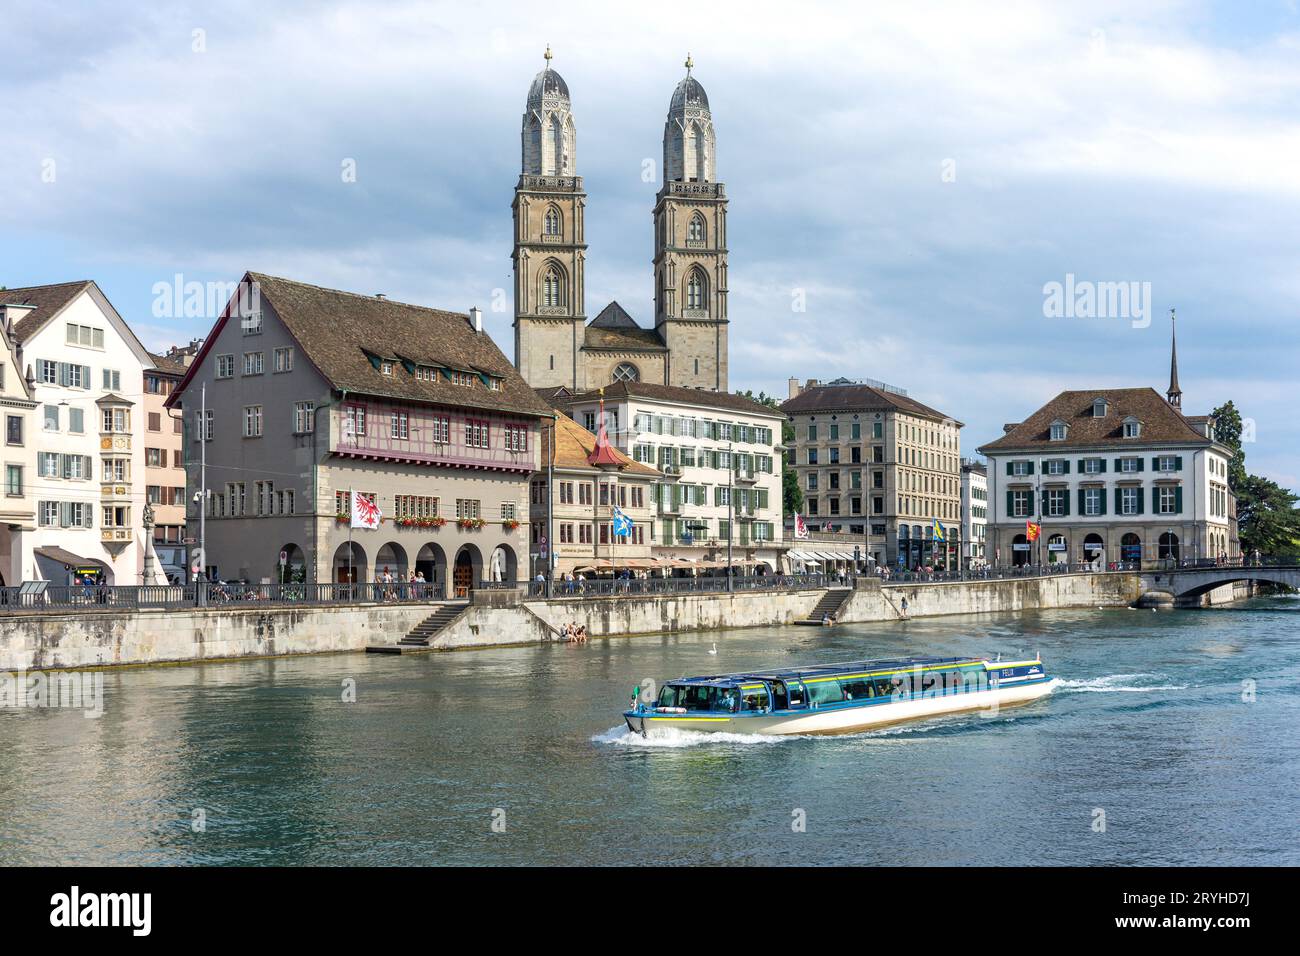 Église de Grossmünster et bateau de croisière sur la rivière Limmat, Pont de Grossmünster, Altstadt (vieille ville), ville de Zürich, Zürich, Suisse Banque D'Images